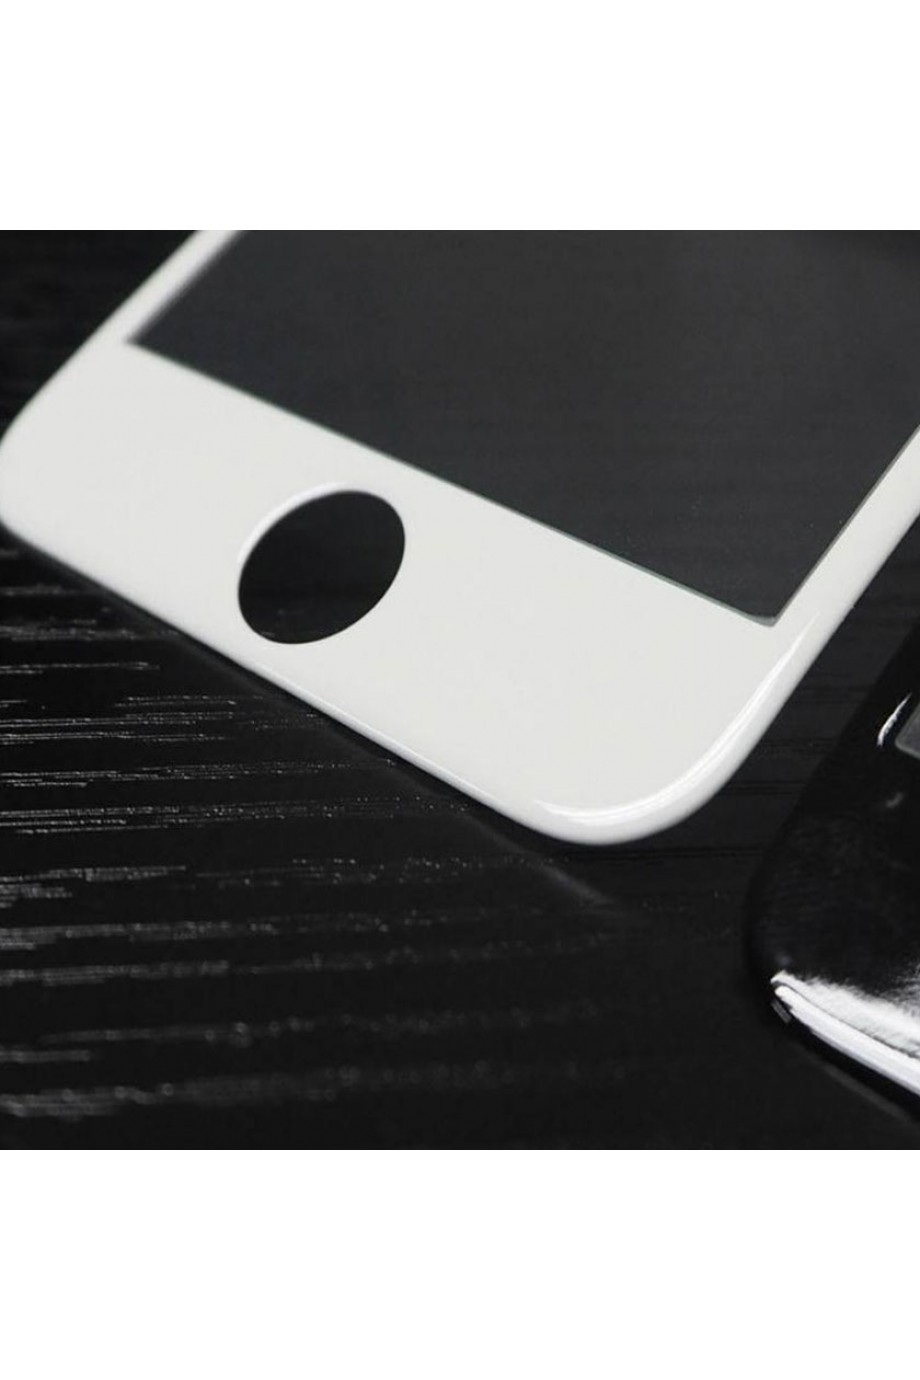 Защитное стекло 5D Mikomo для iPhone 6S, белая рамка, полный клей